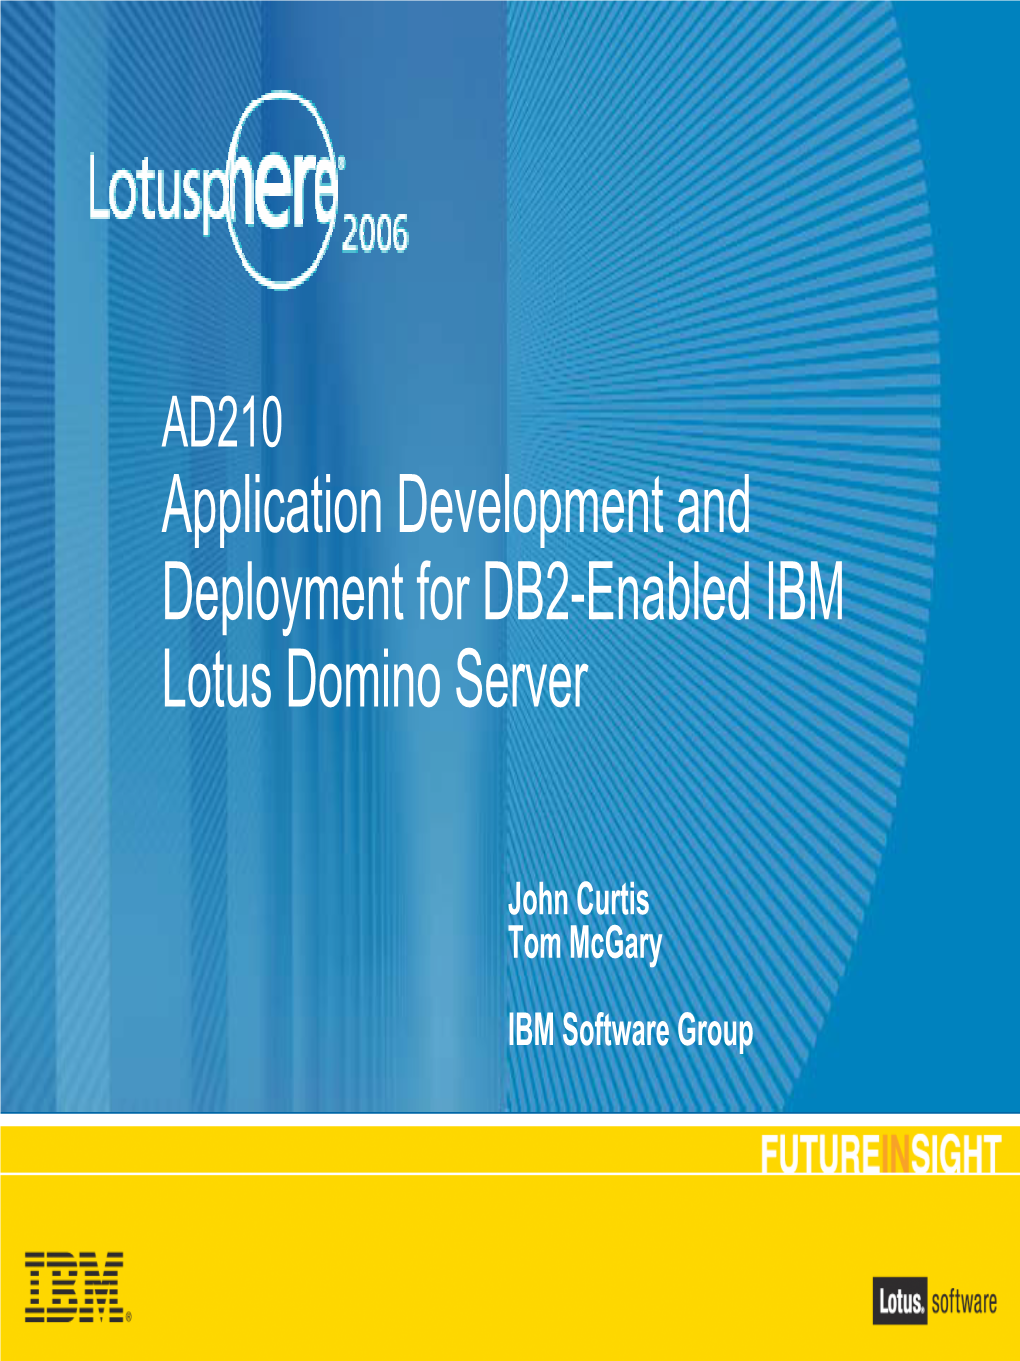 IBM Lotus Software